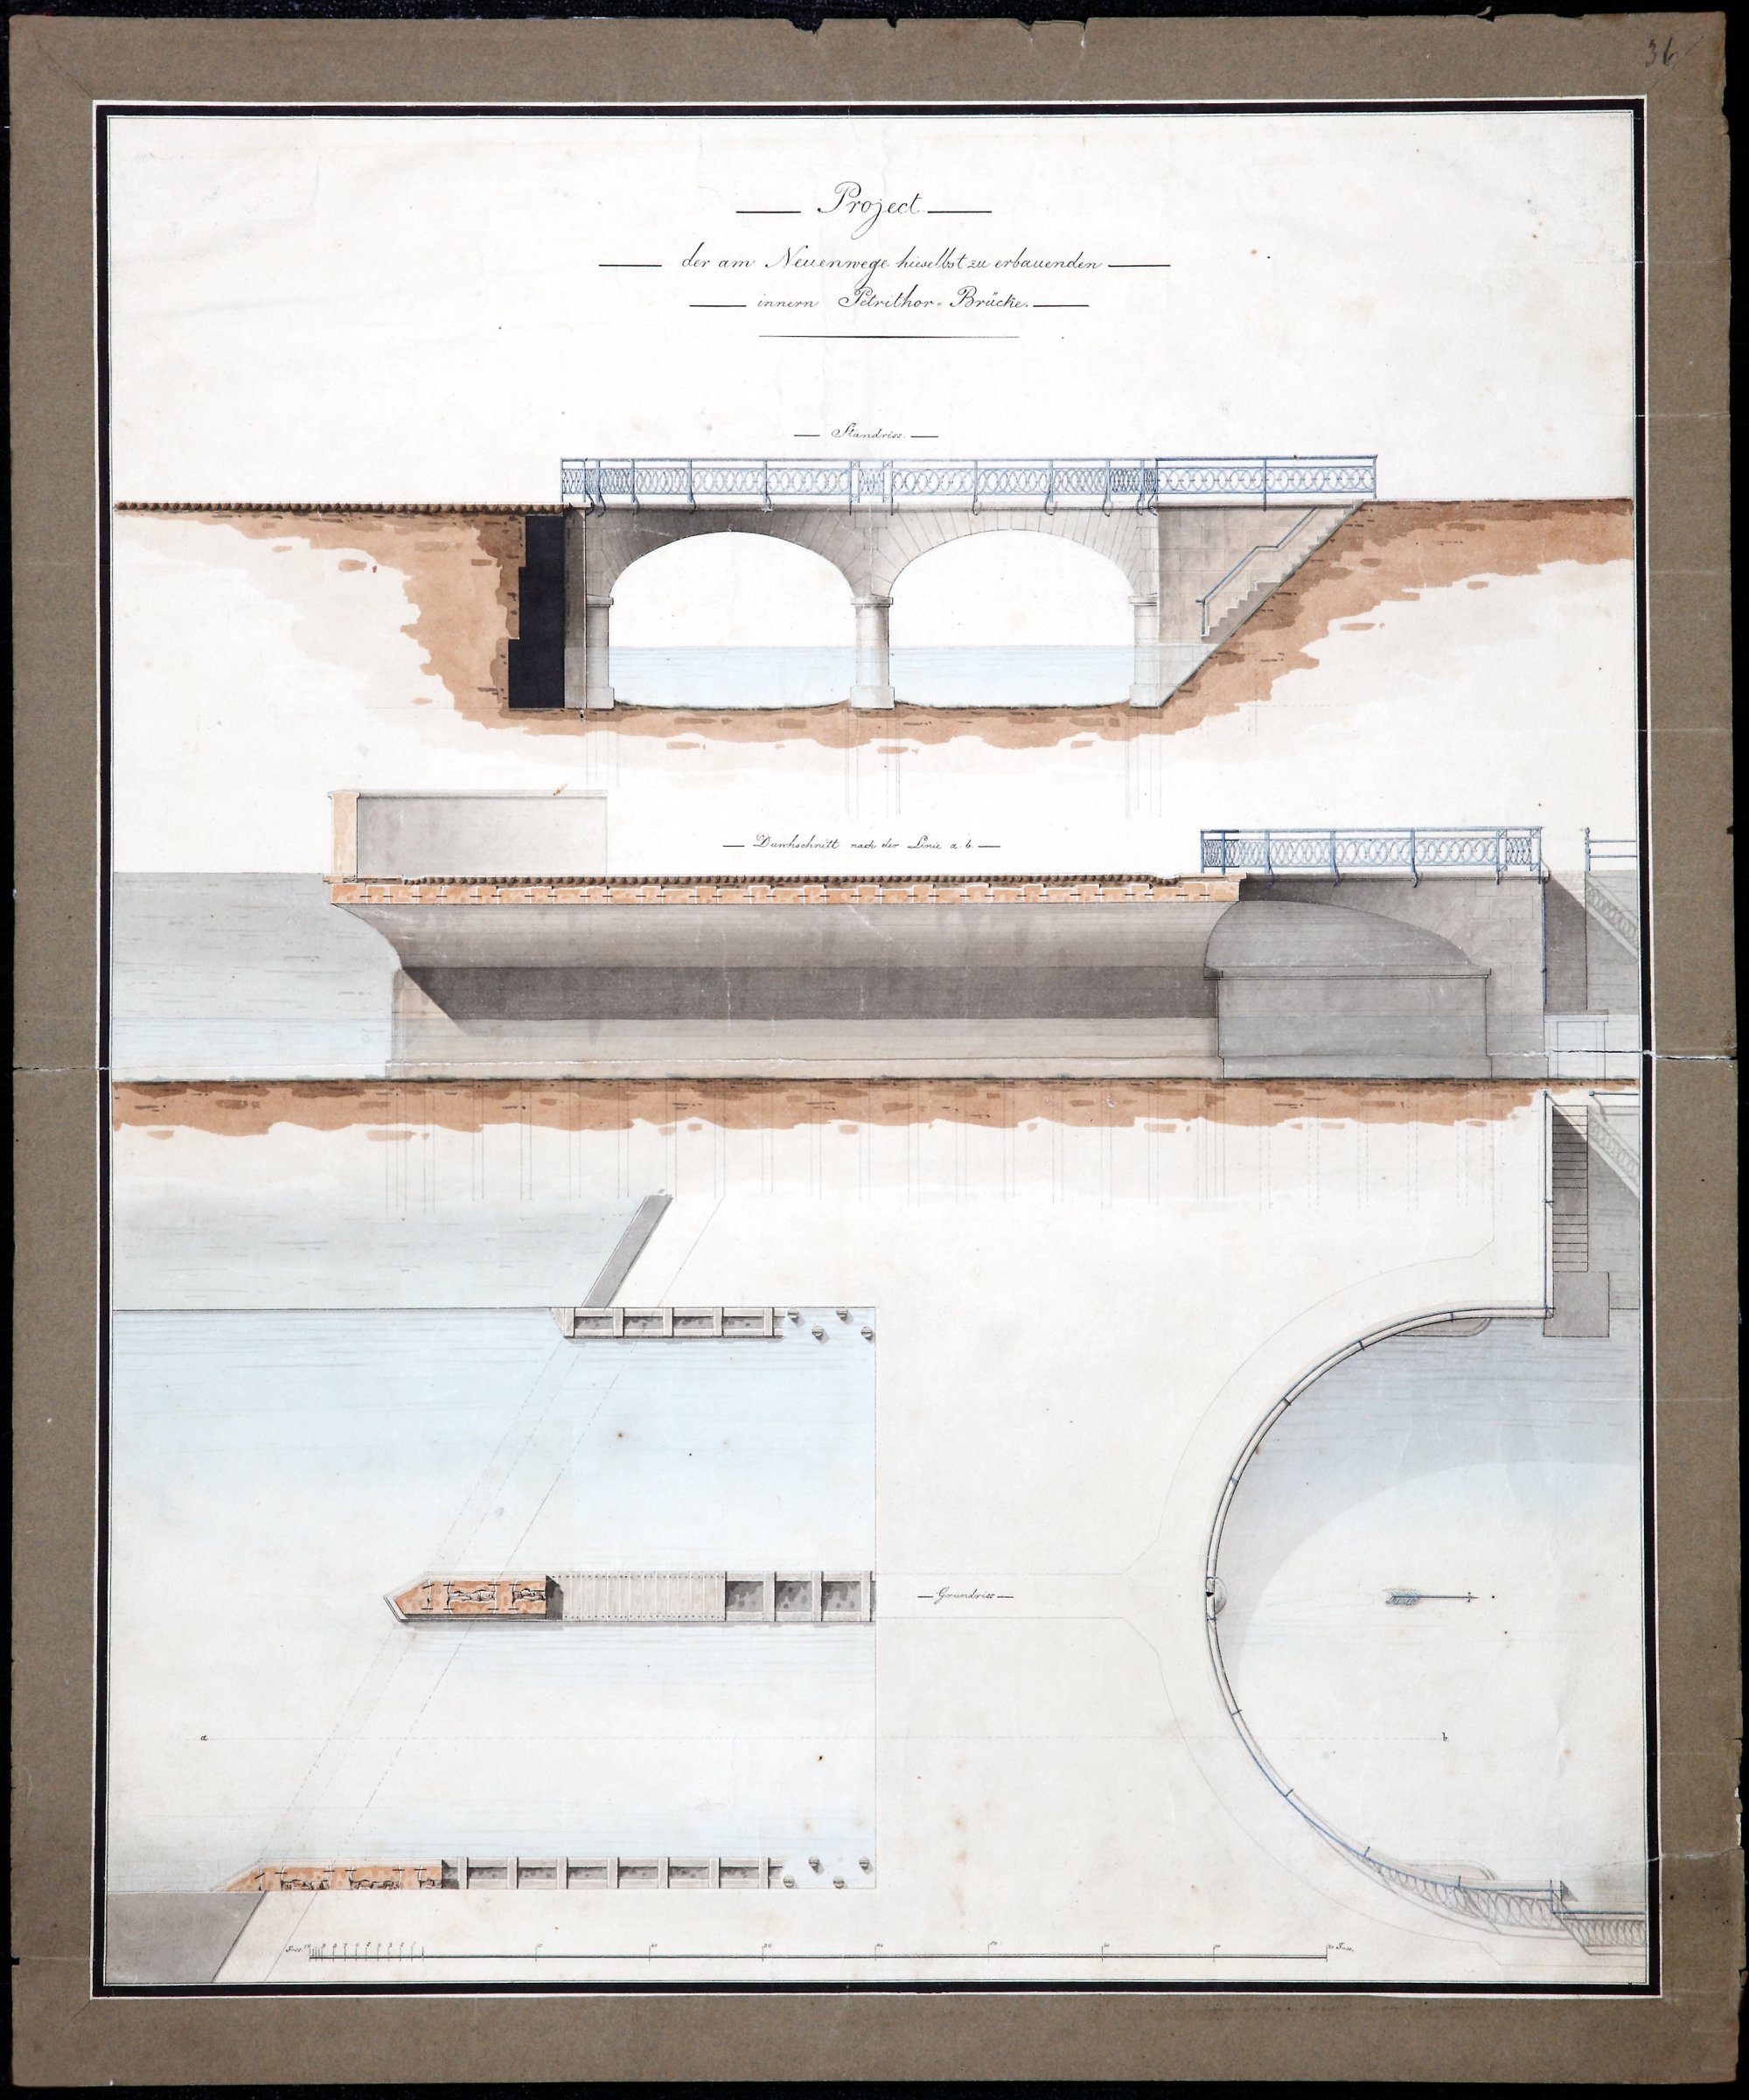 Brücke Neues Petritor, Entwurfszeichnung von Krahe, Ansicht, Längsschnitt und Grundriss, 1819